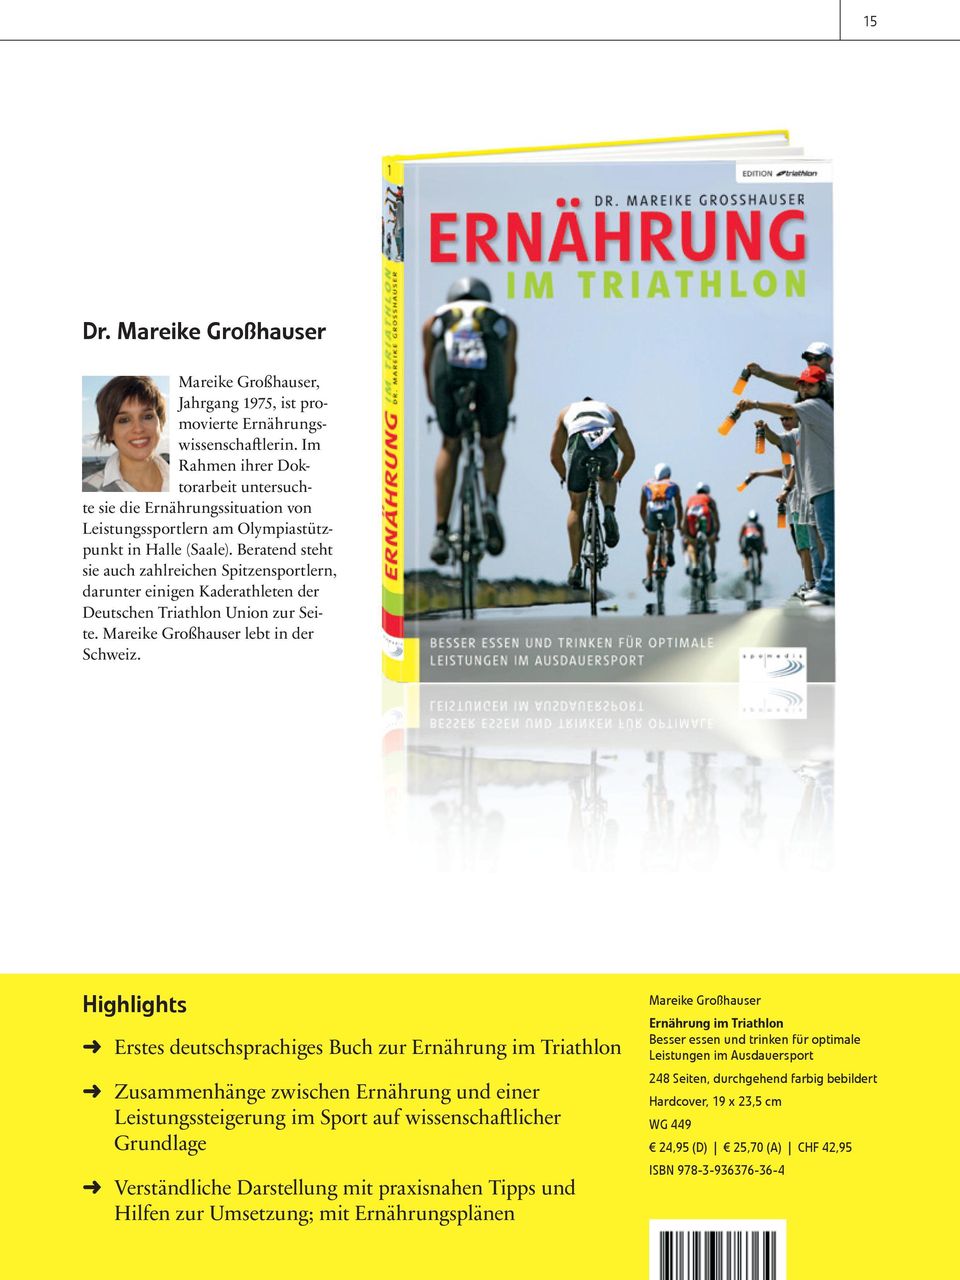 Beratend steht sie auch zahlreichen Spitzensportlern, darunter einigen Kaderathleten der Deutschen Triathlon Union zur Seite. Mareike Großhauser lebt in der Schweiz.